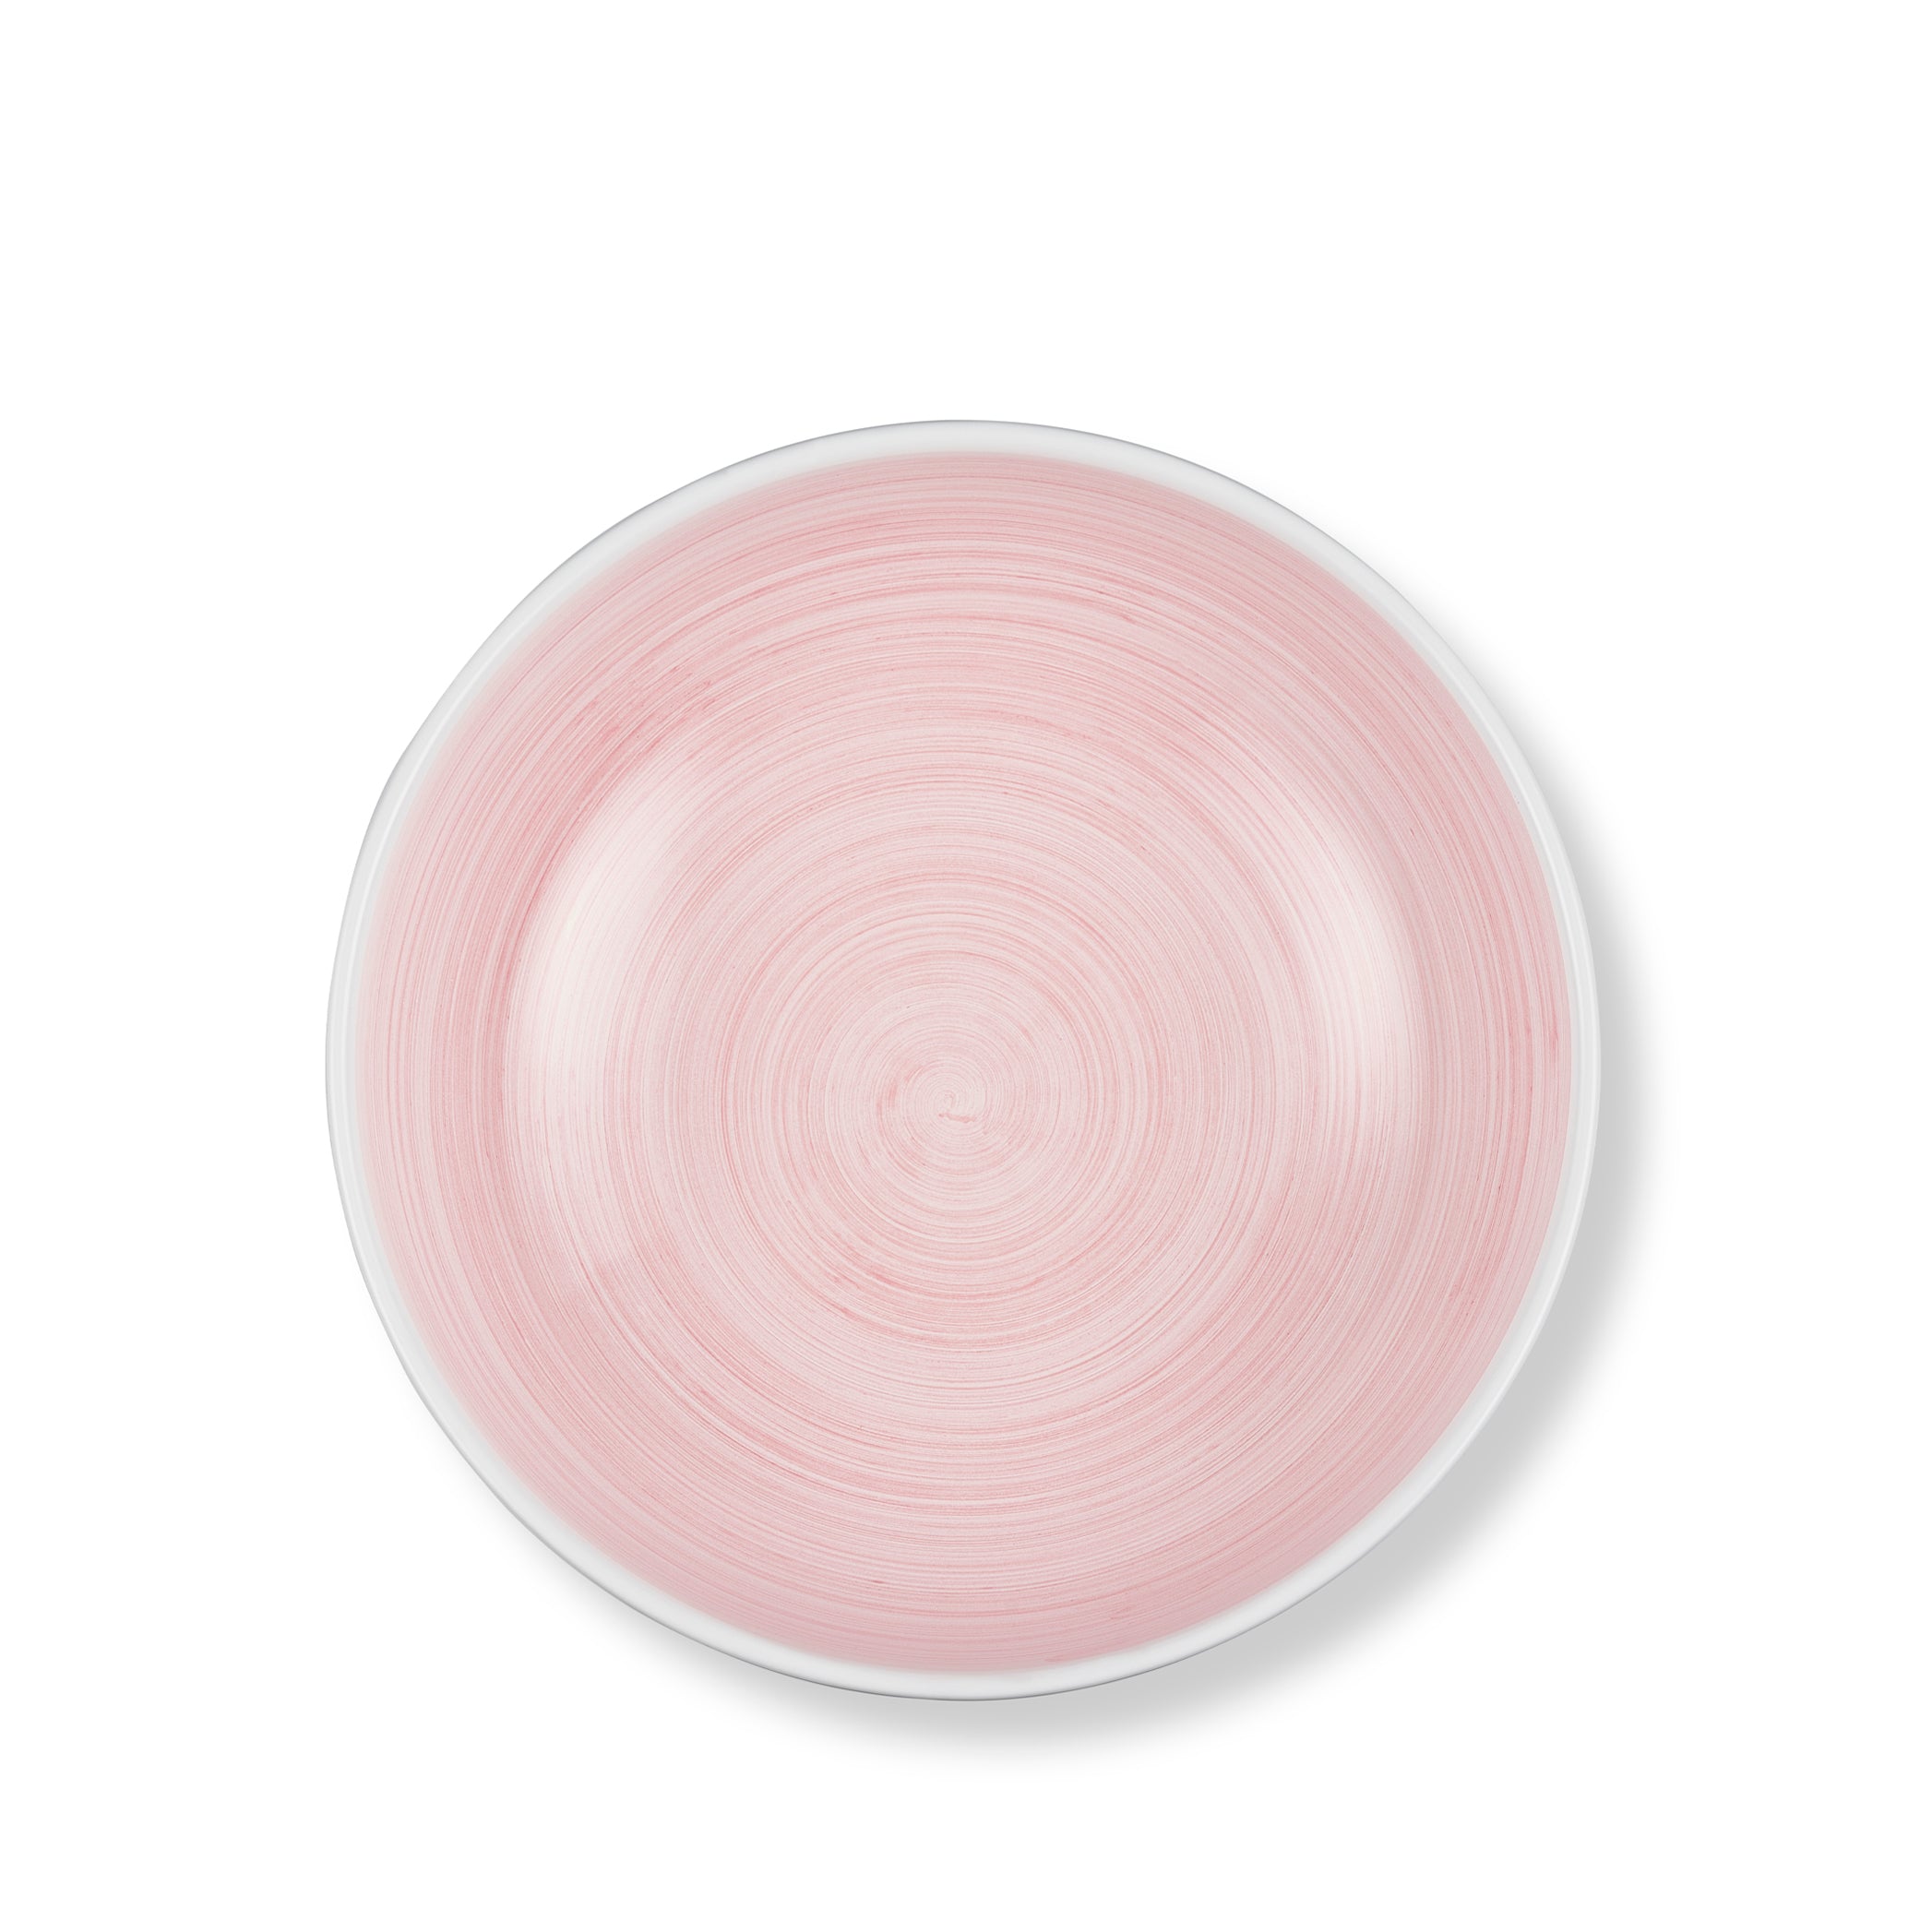 S&B 'Brushed' Ceramic Serving Bowl in Pastel Pink, 30cm